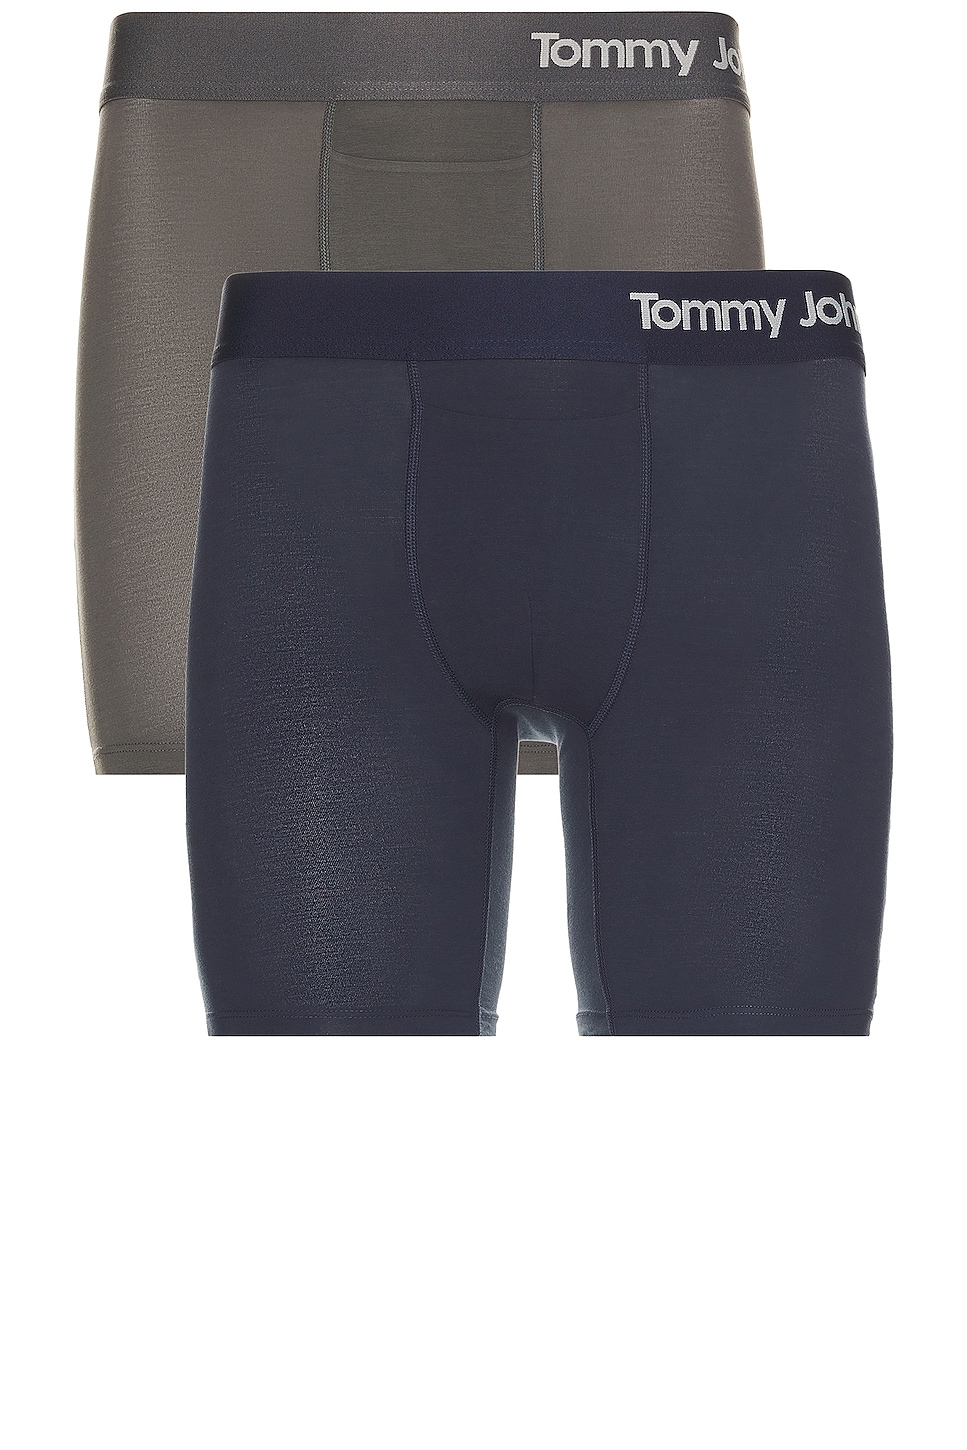 Tommy John Boxer Brief Underwear Gray Elastic Waist Size Medium